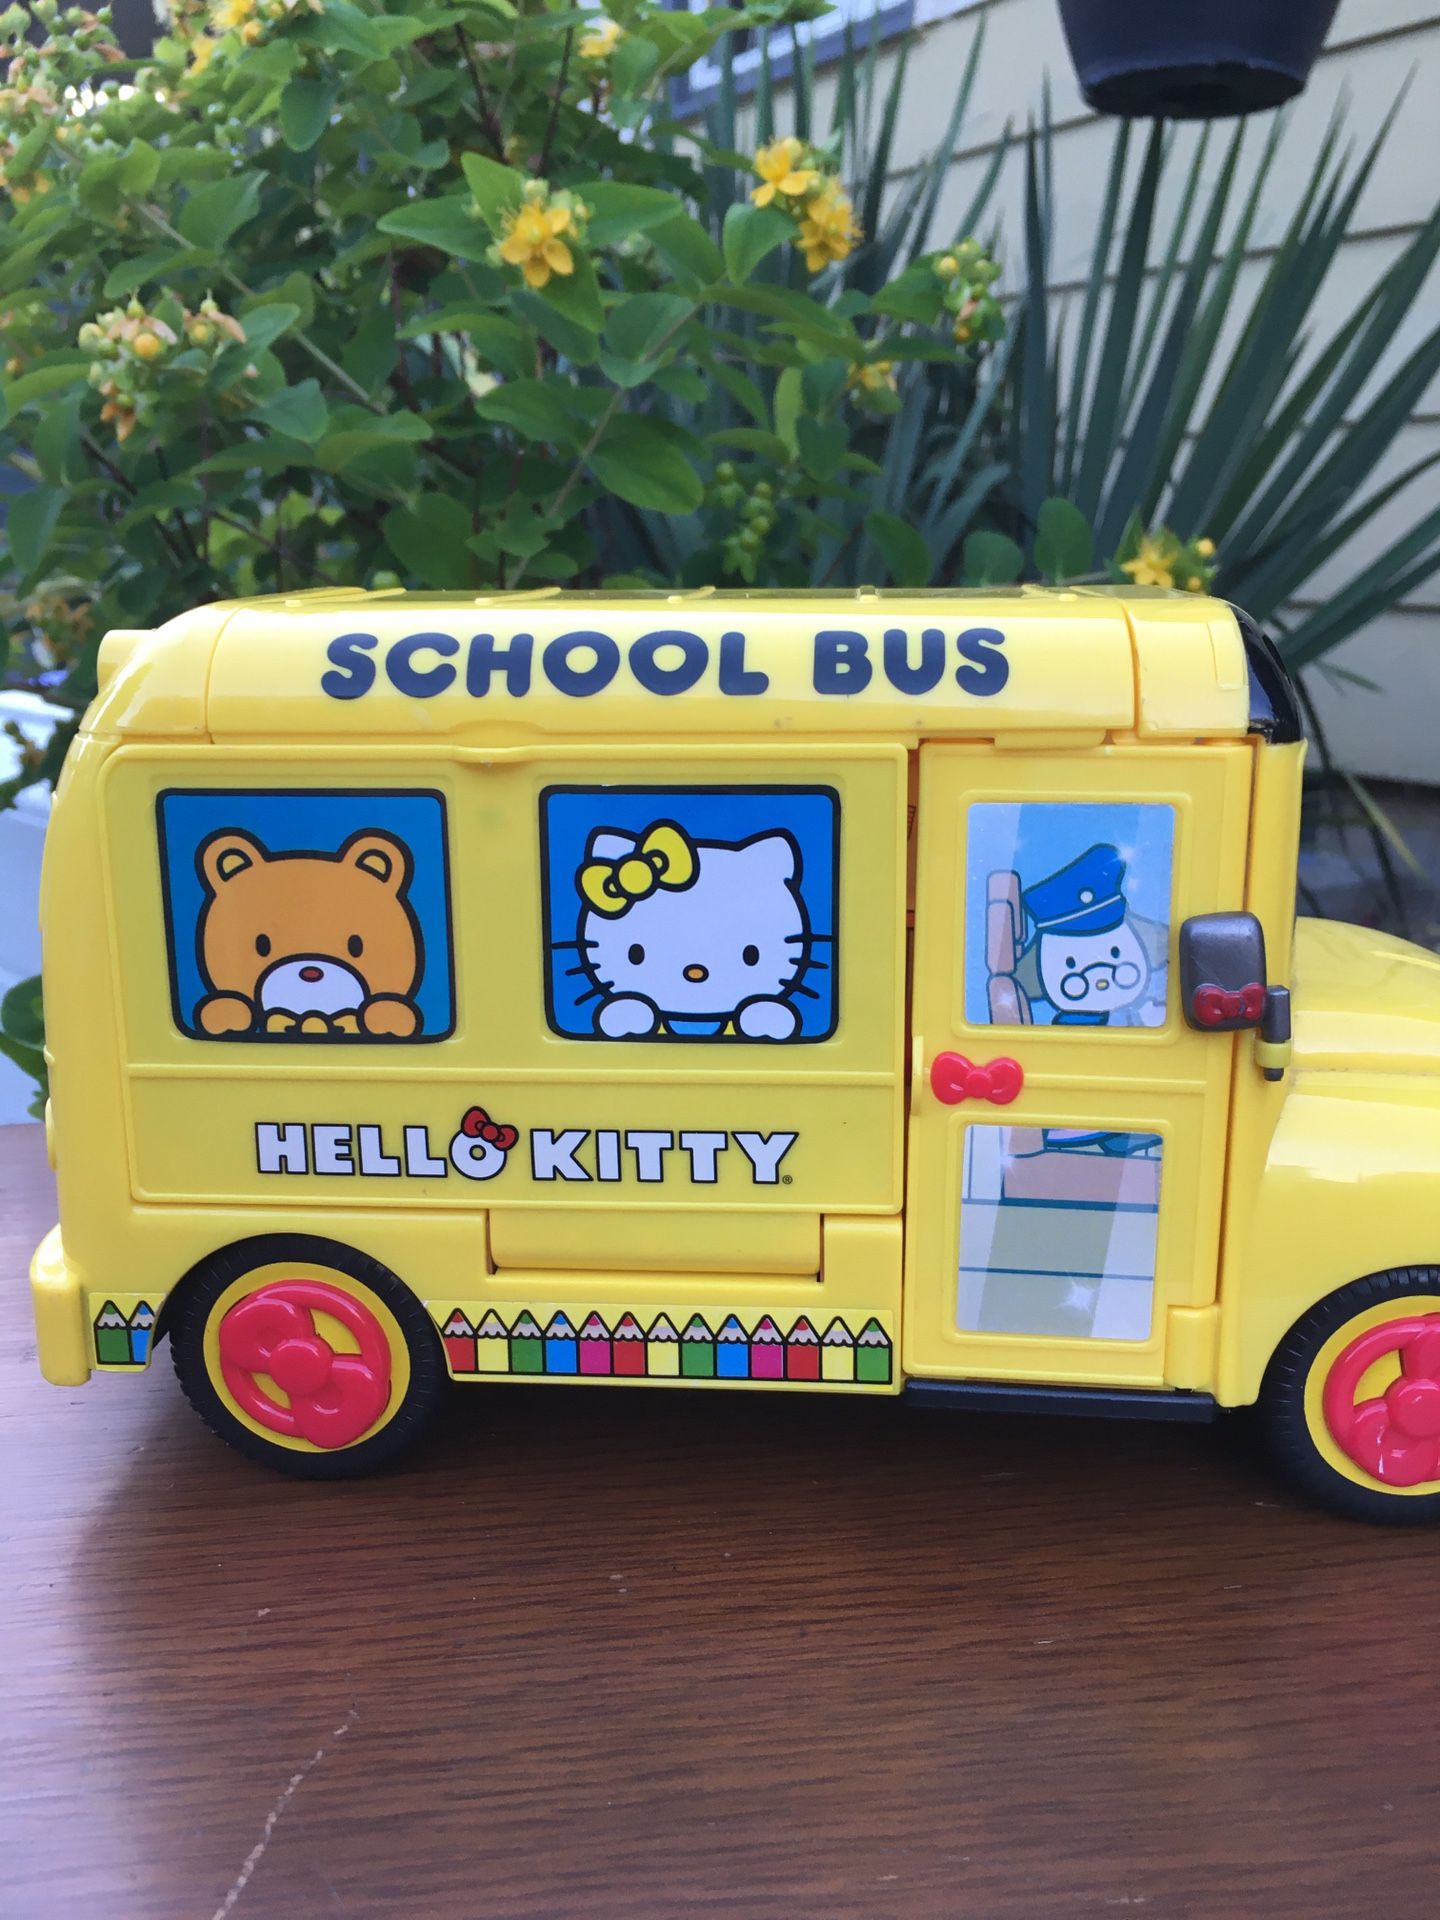 Hello kitty school bus